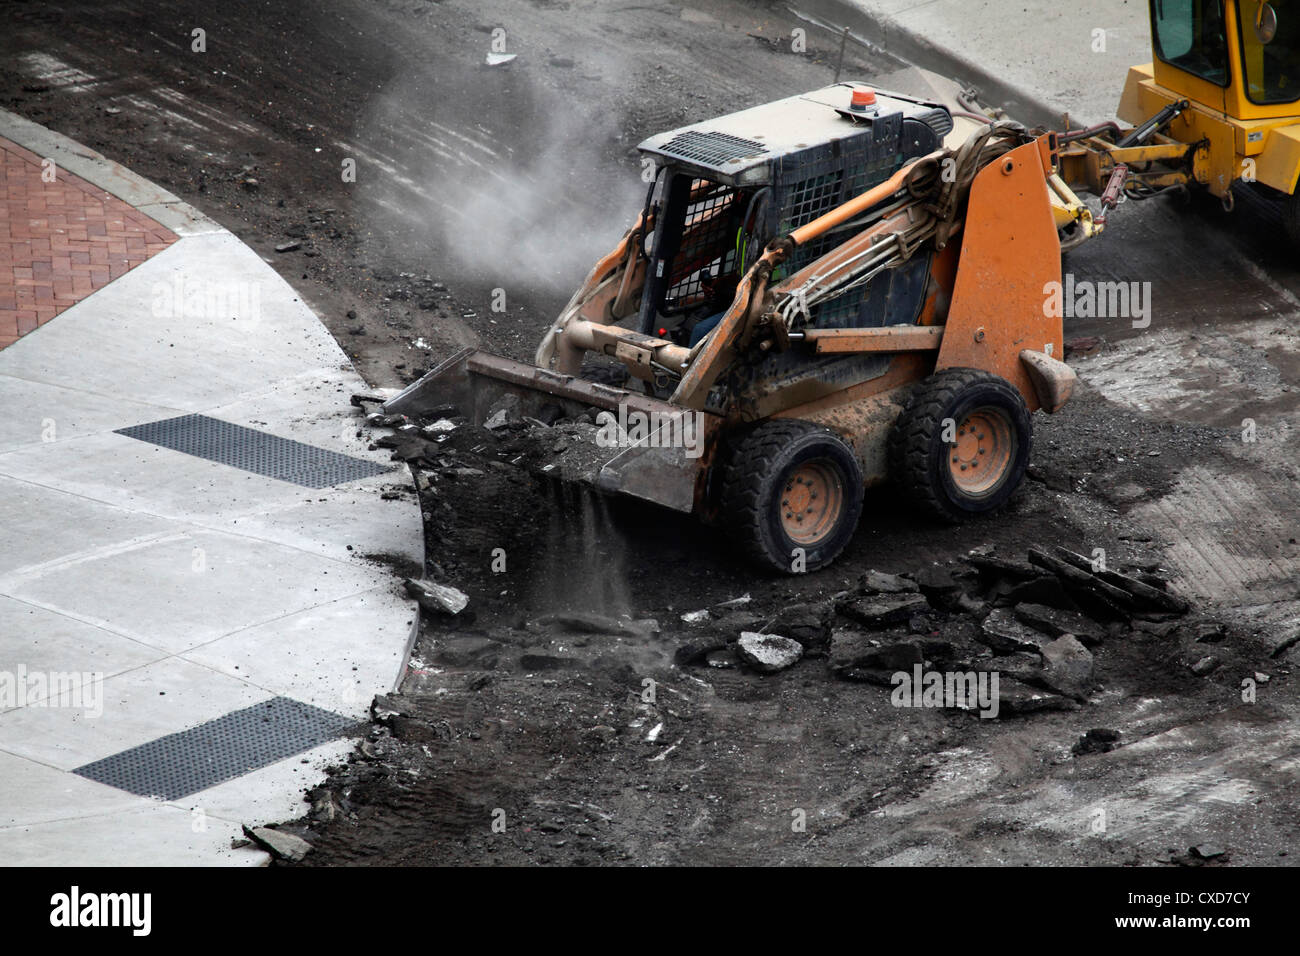 Skid loader picking up asphalt debris. Stock Photo